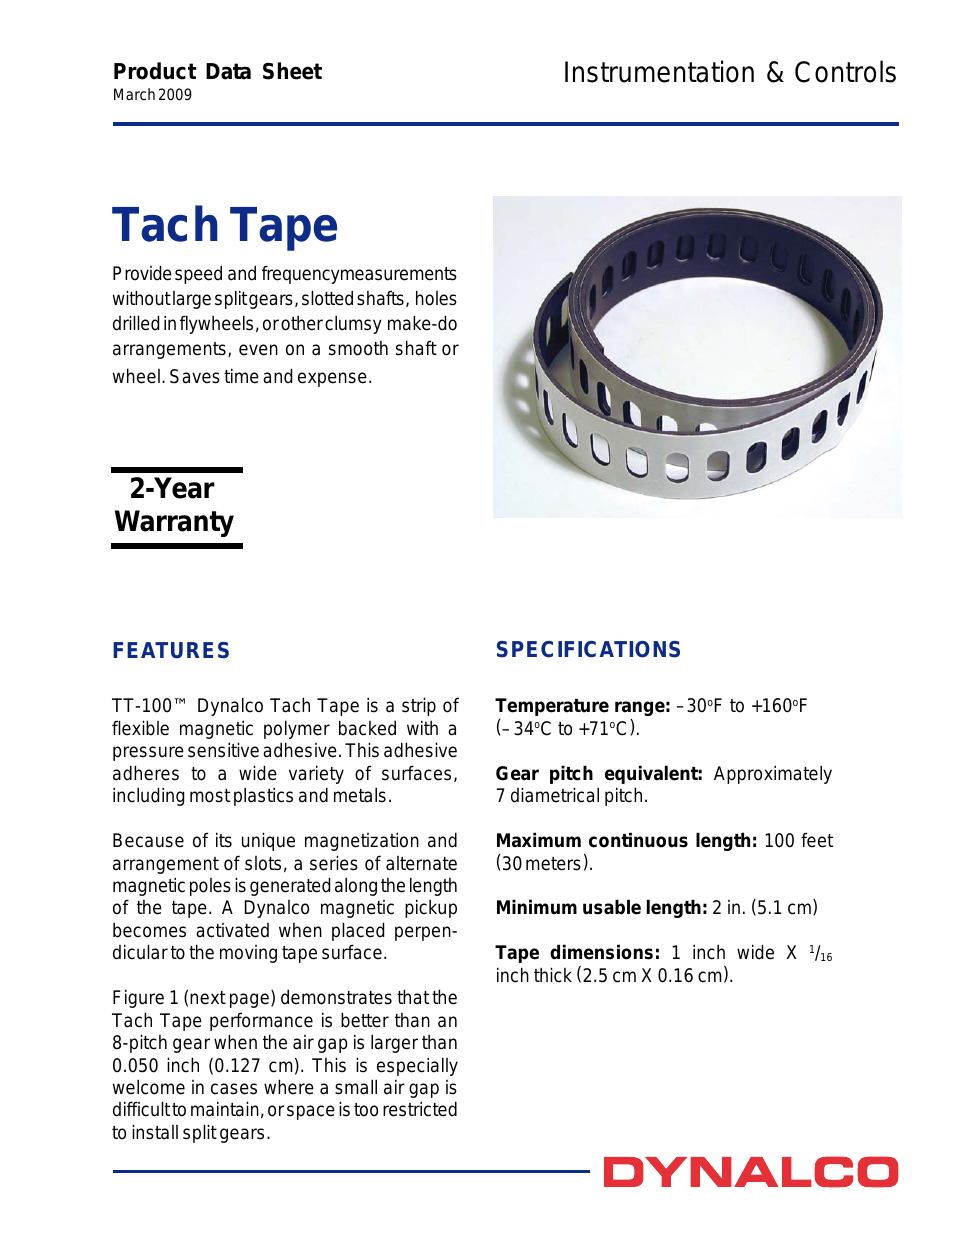 TT-100 Tach Tape